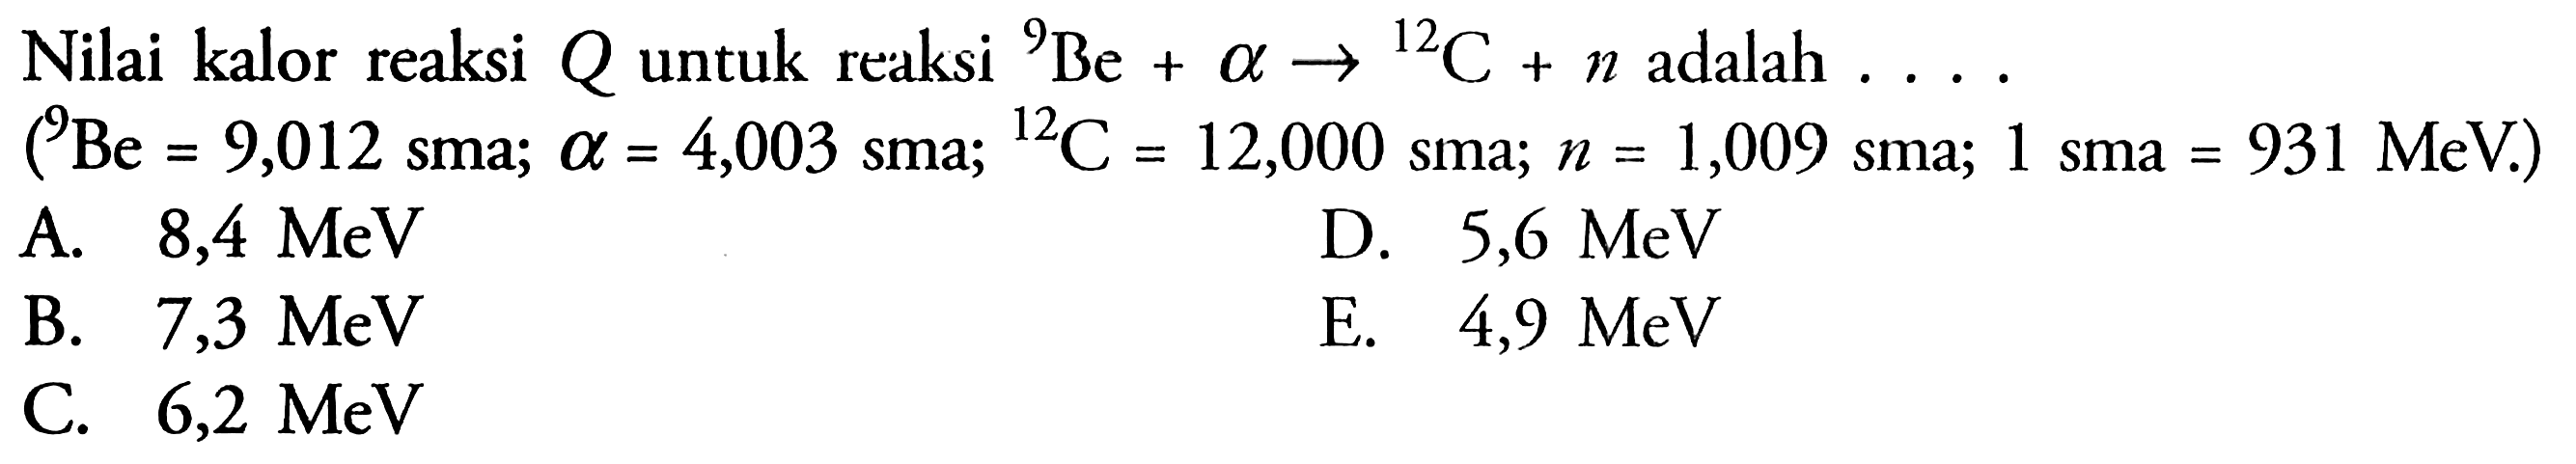 Nilai kalor reaksi Q untuk reaksi 9 Be+a->12 C+n adalah... (9 Be=9,012 sma; a=4,003 sma; 12 C=12,000 sma; n=1,009 sma; 1 sma=931 MeV) 